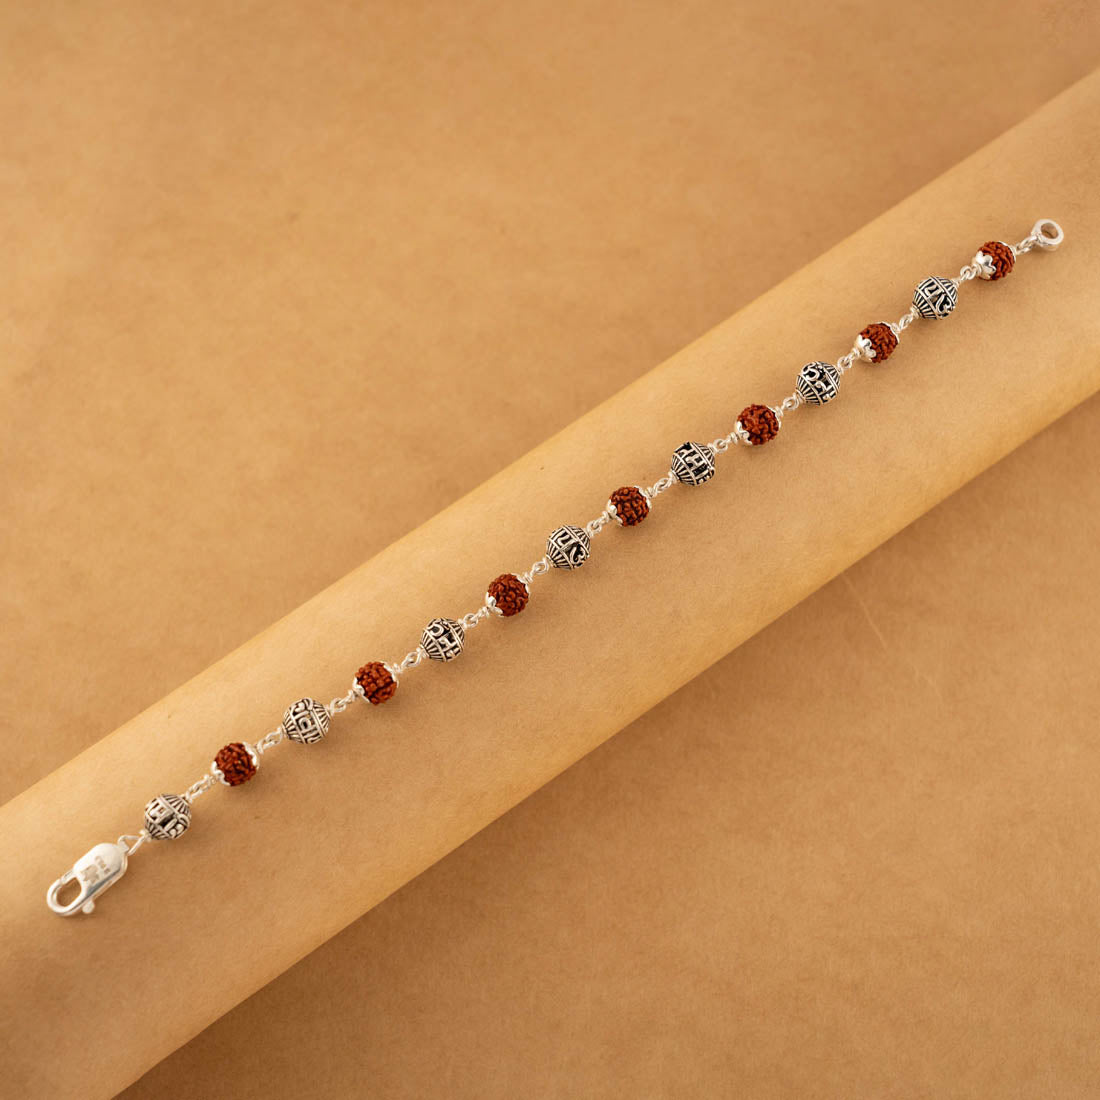 Rudraksha and Om namah shivay silver beads bracelet